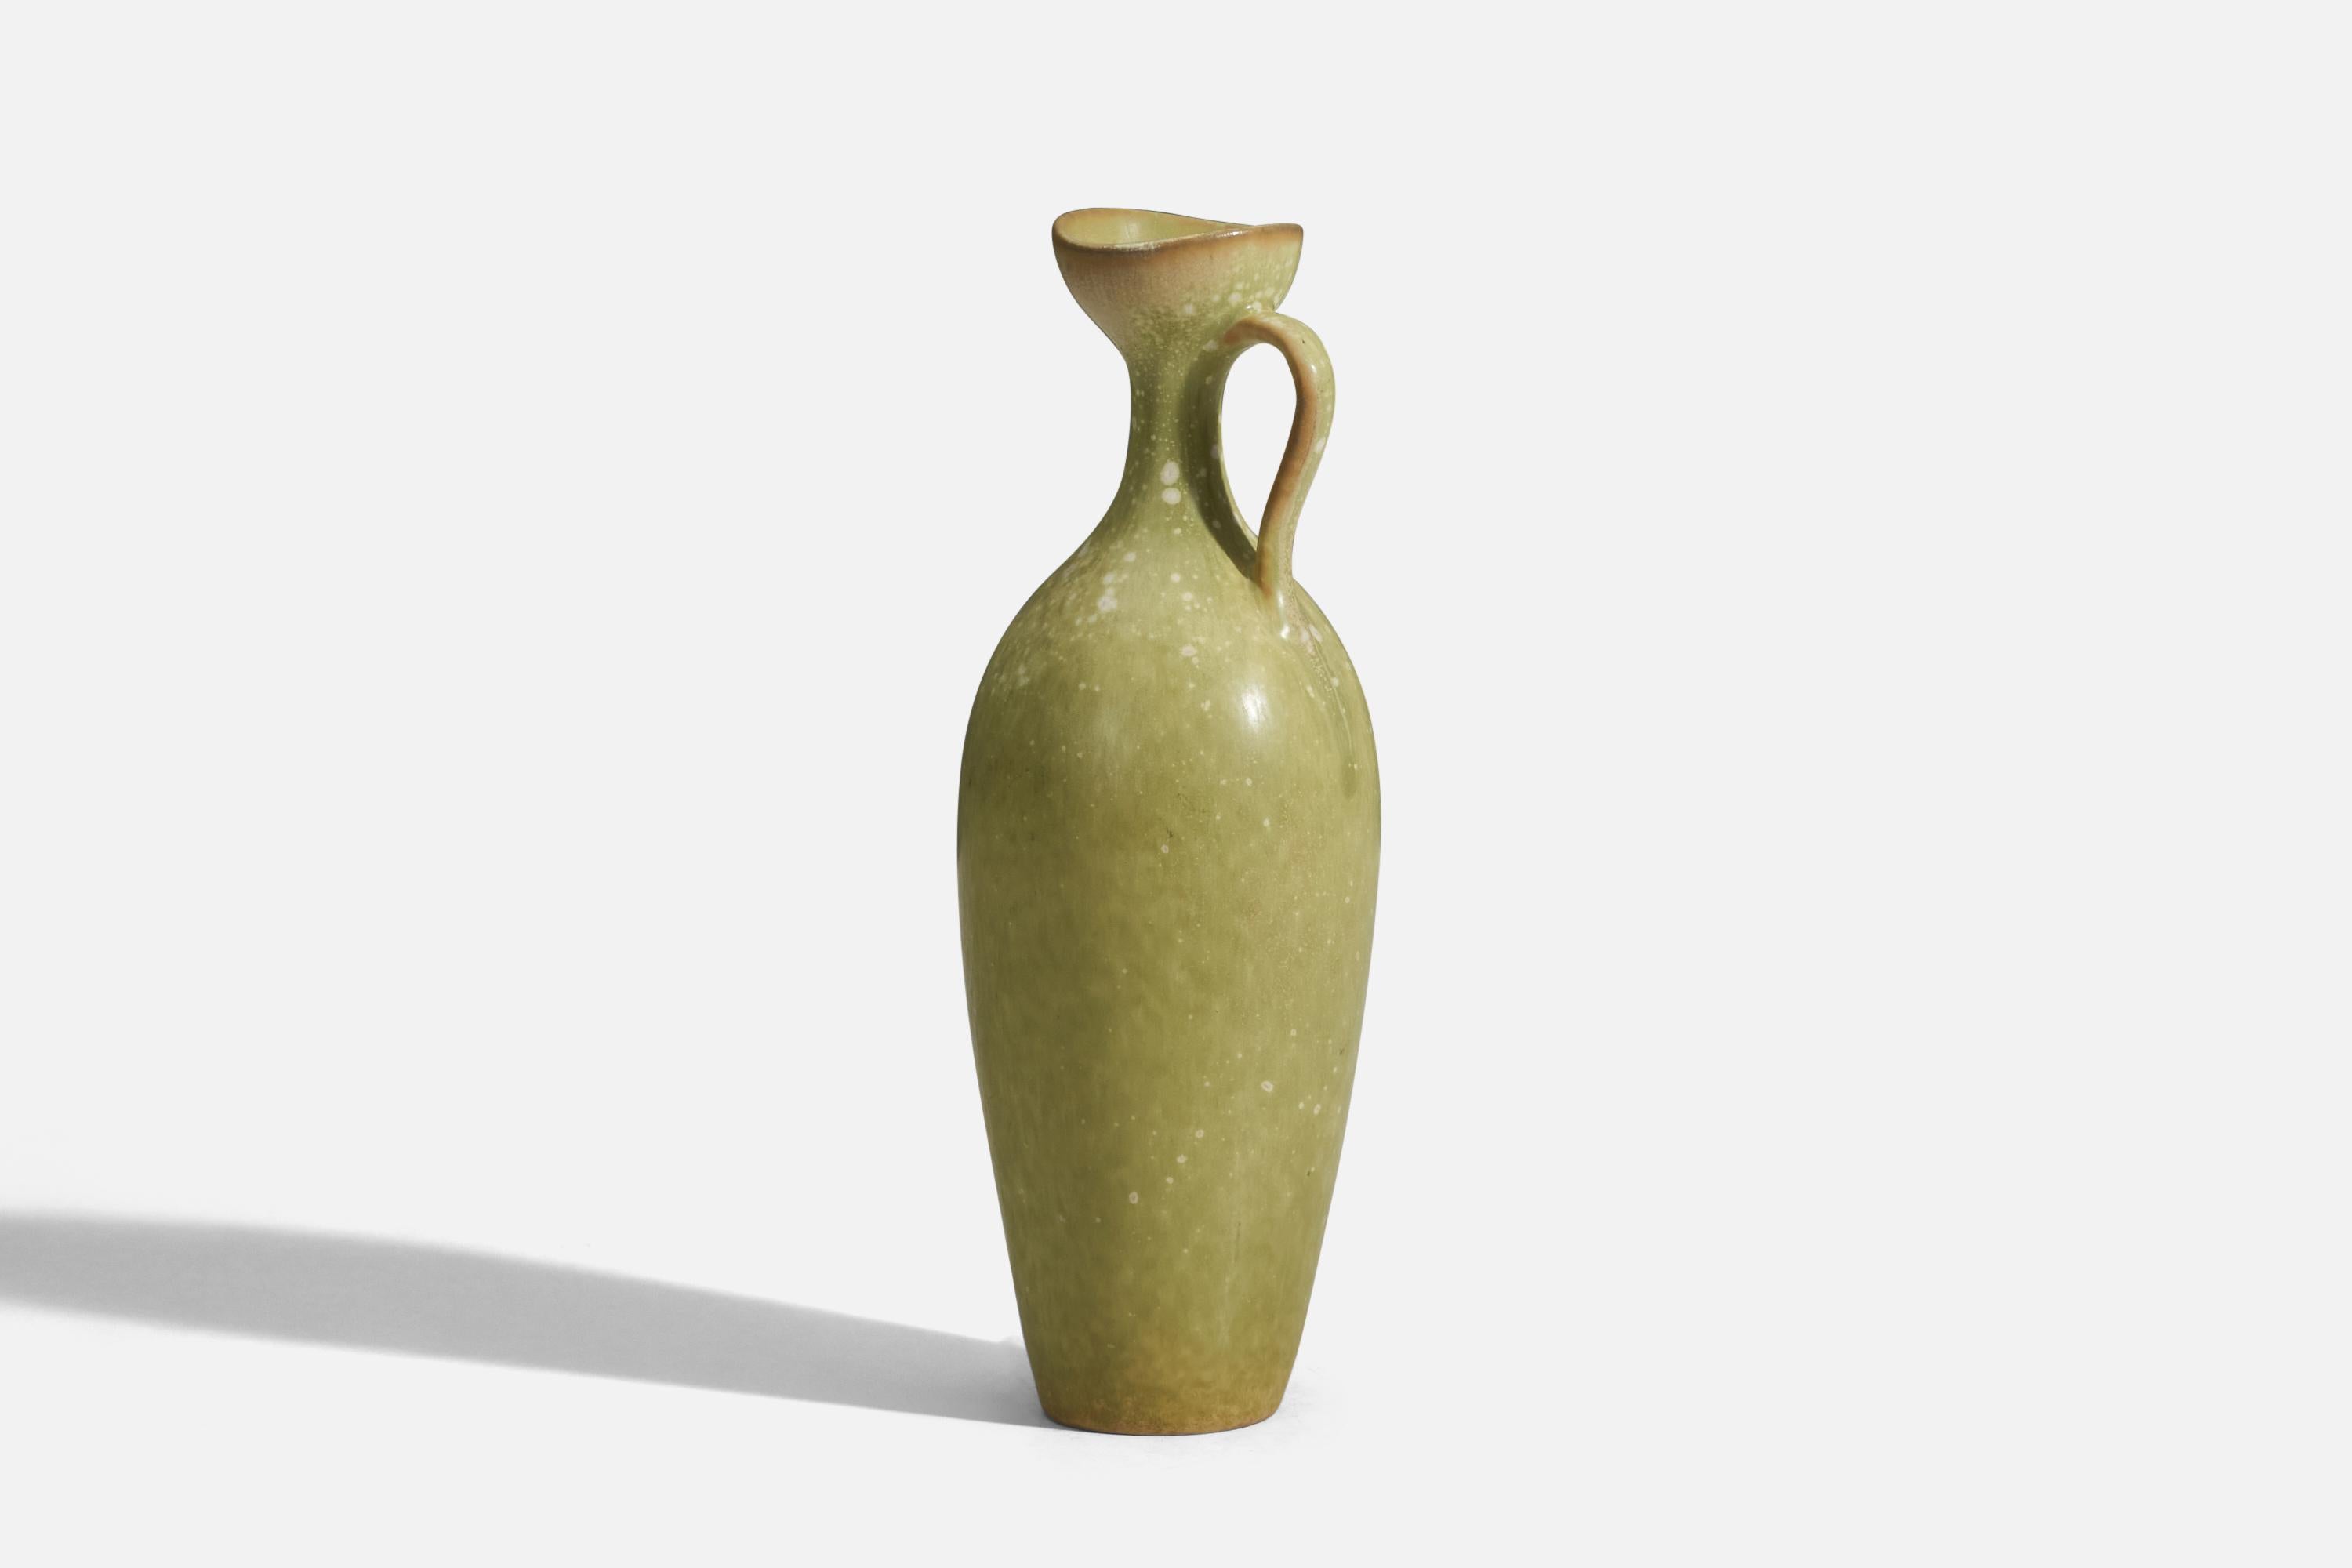 Scandinavian Modern Gunnar Nylund, Pitcher, Green Glazed Stoneware, Rörstrand, Sweden, 1950s For Sale